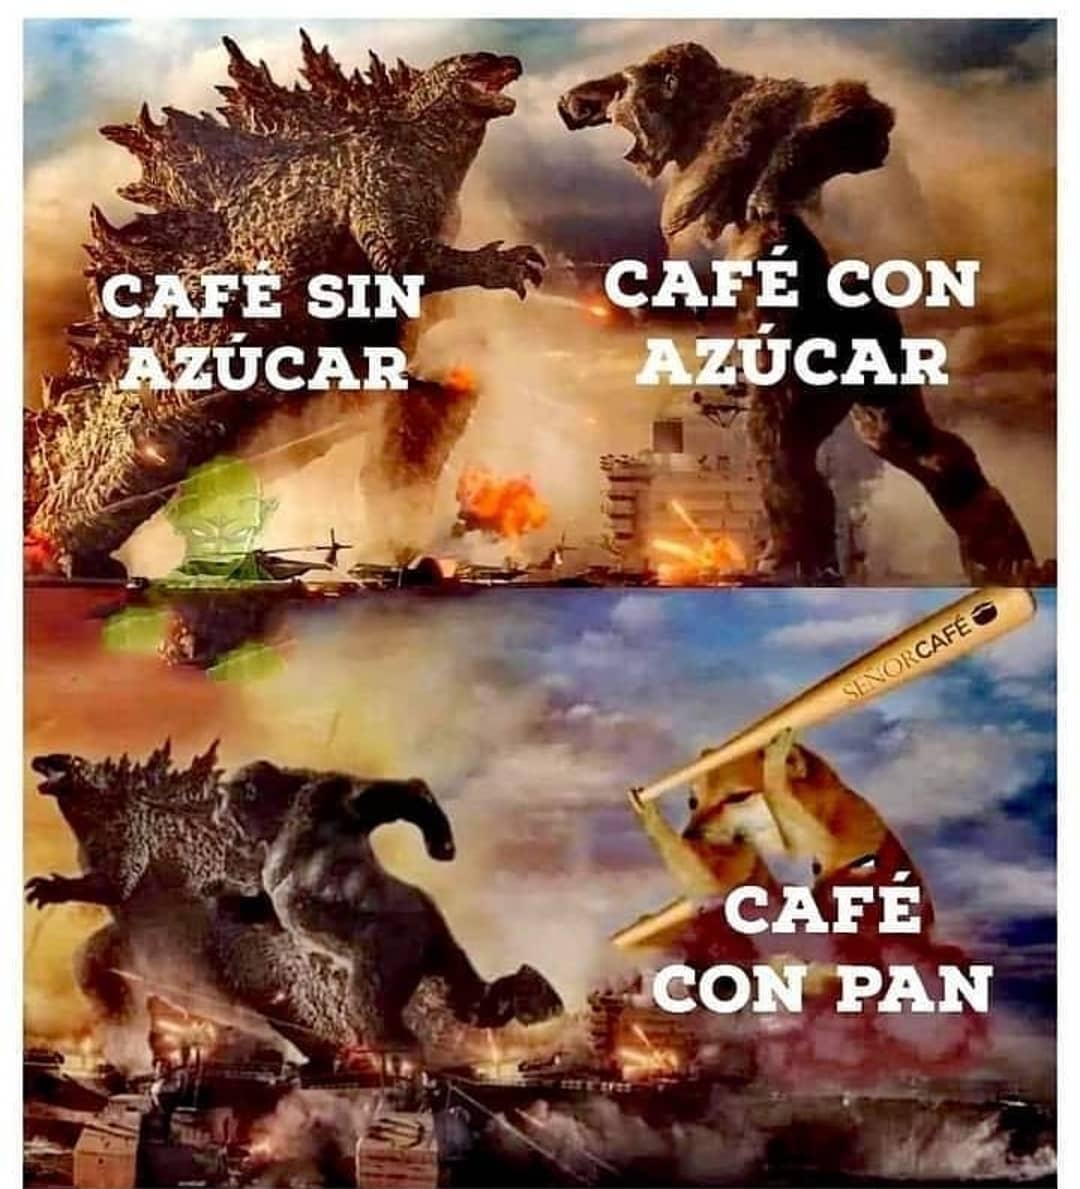 Café sin azúcar. Café con azúcar. Café con pan.